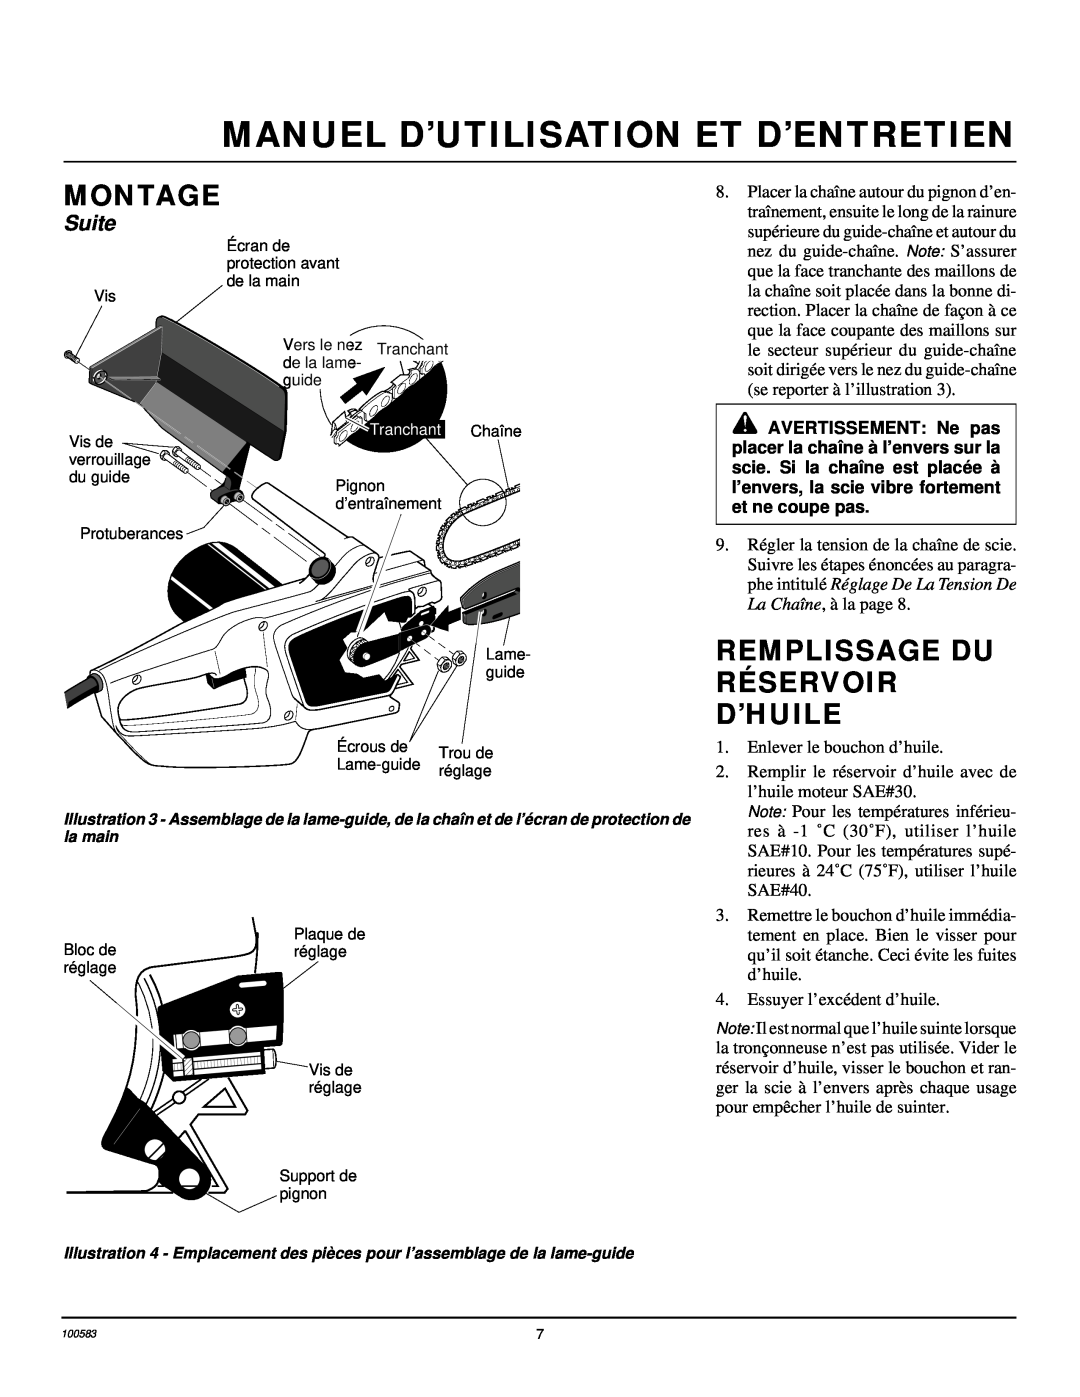 Remington LNT-3 12-inch owner manual Remplissage Du Réservoir D’Huile, Manuel D’Utilisation Et D’Entretien, Montage, Suite 